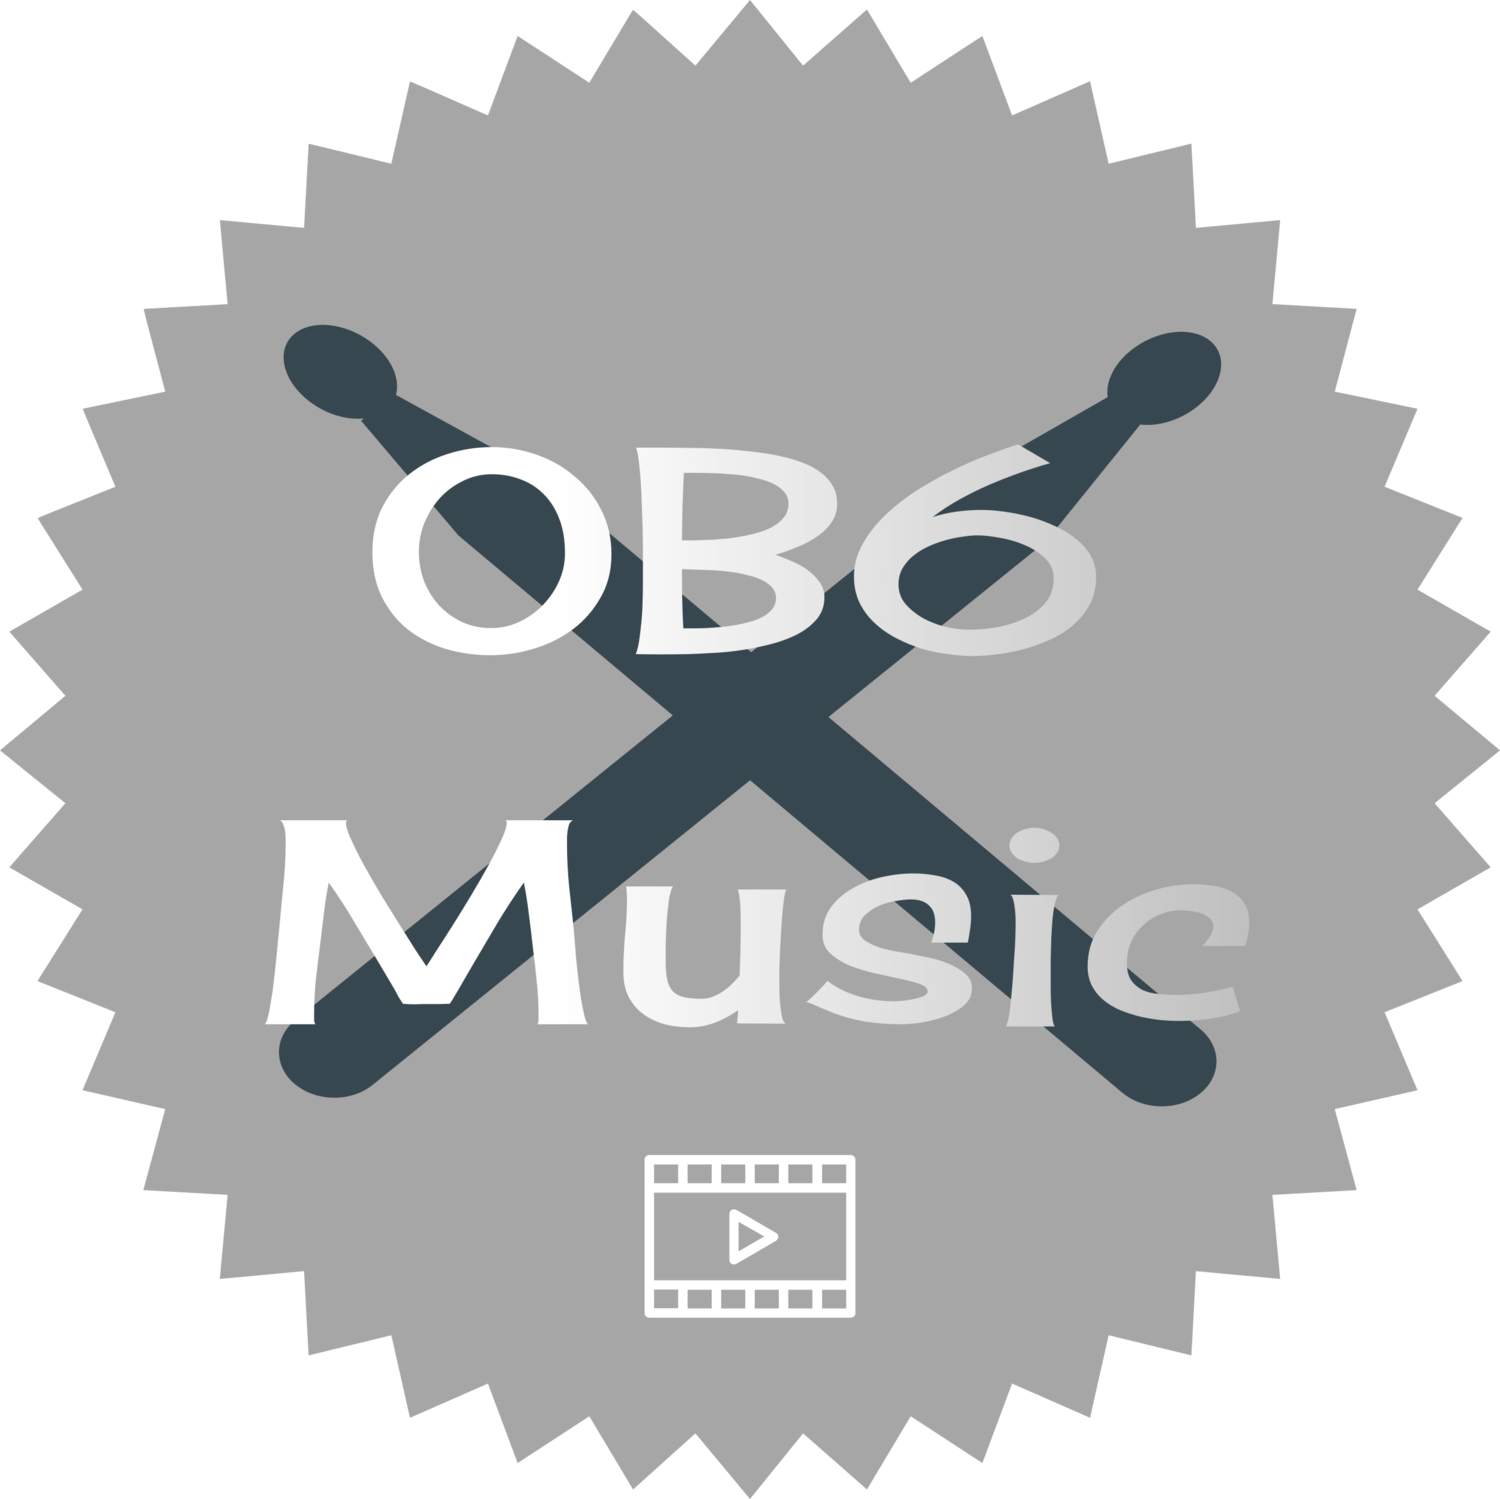 OB6 Music